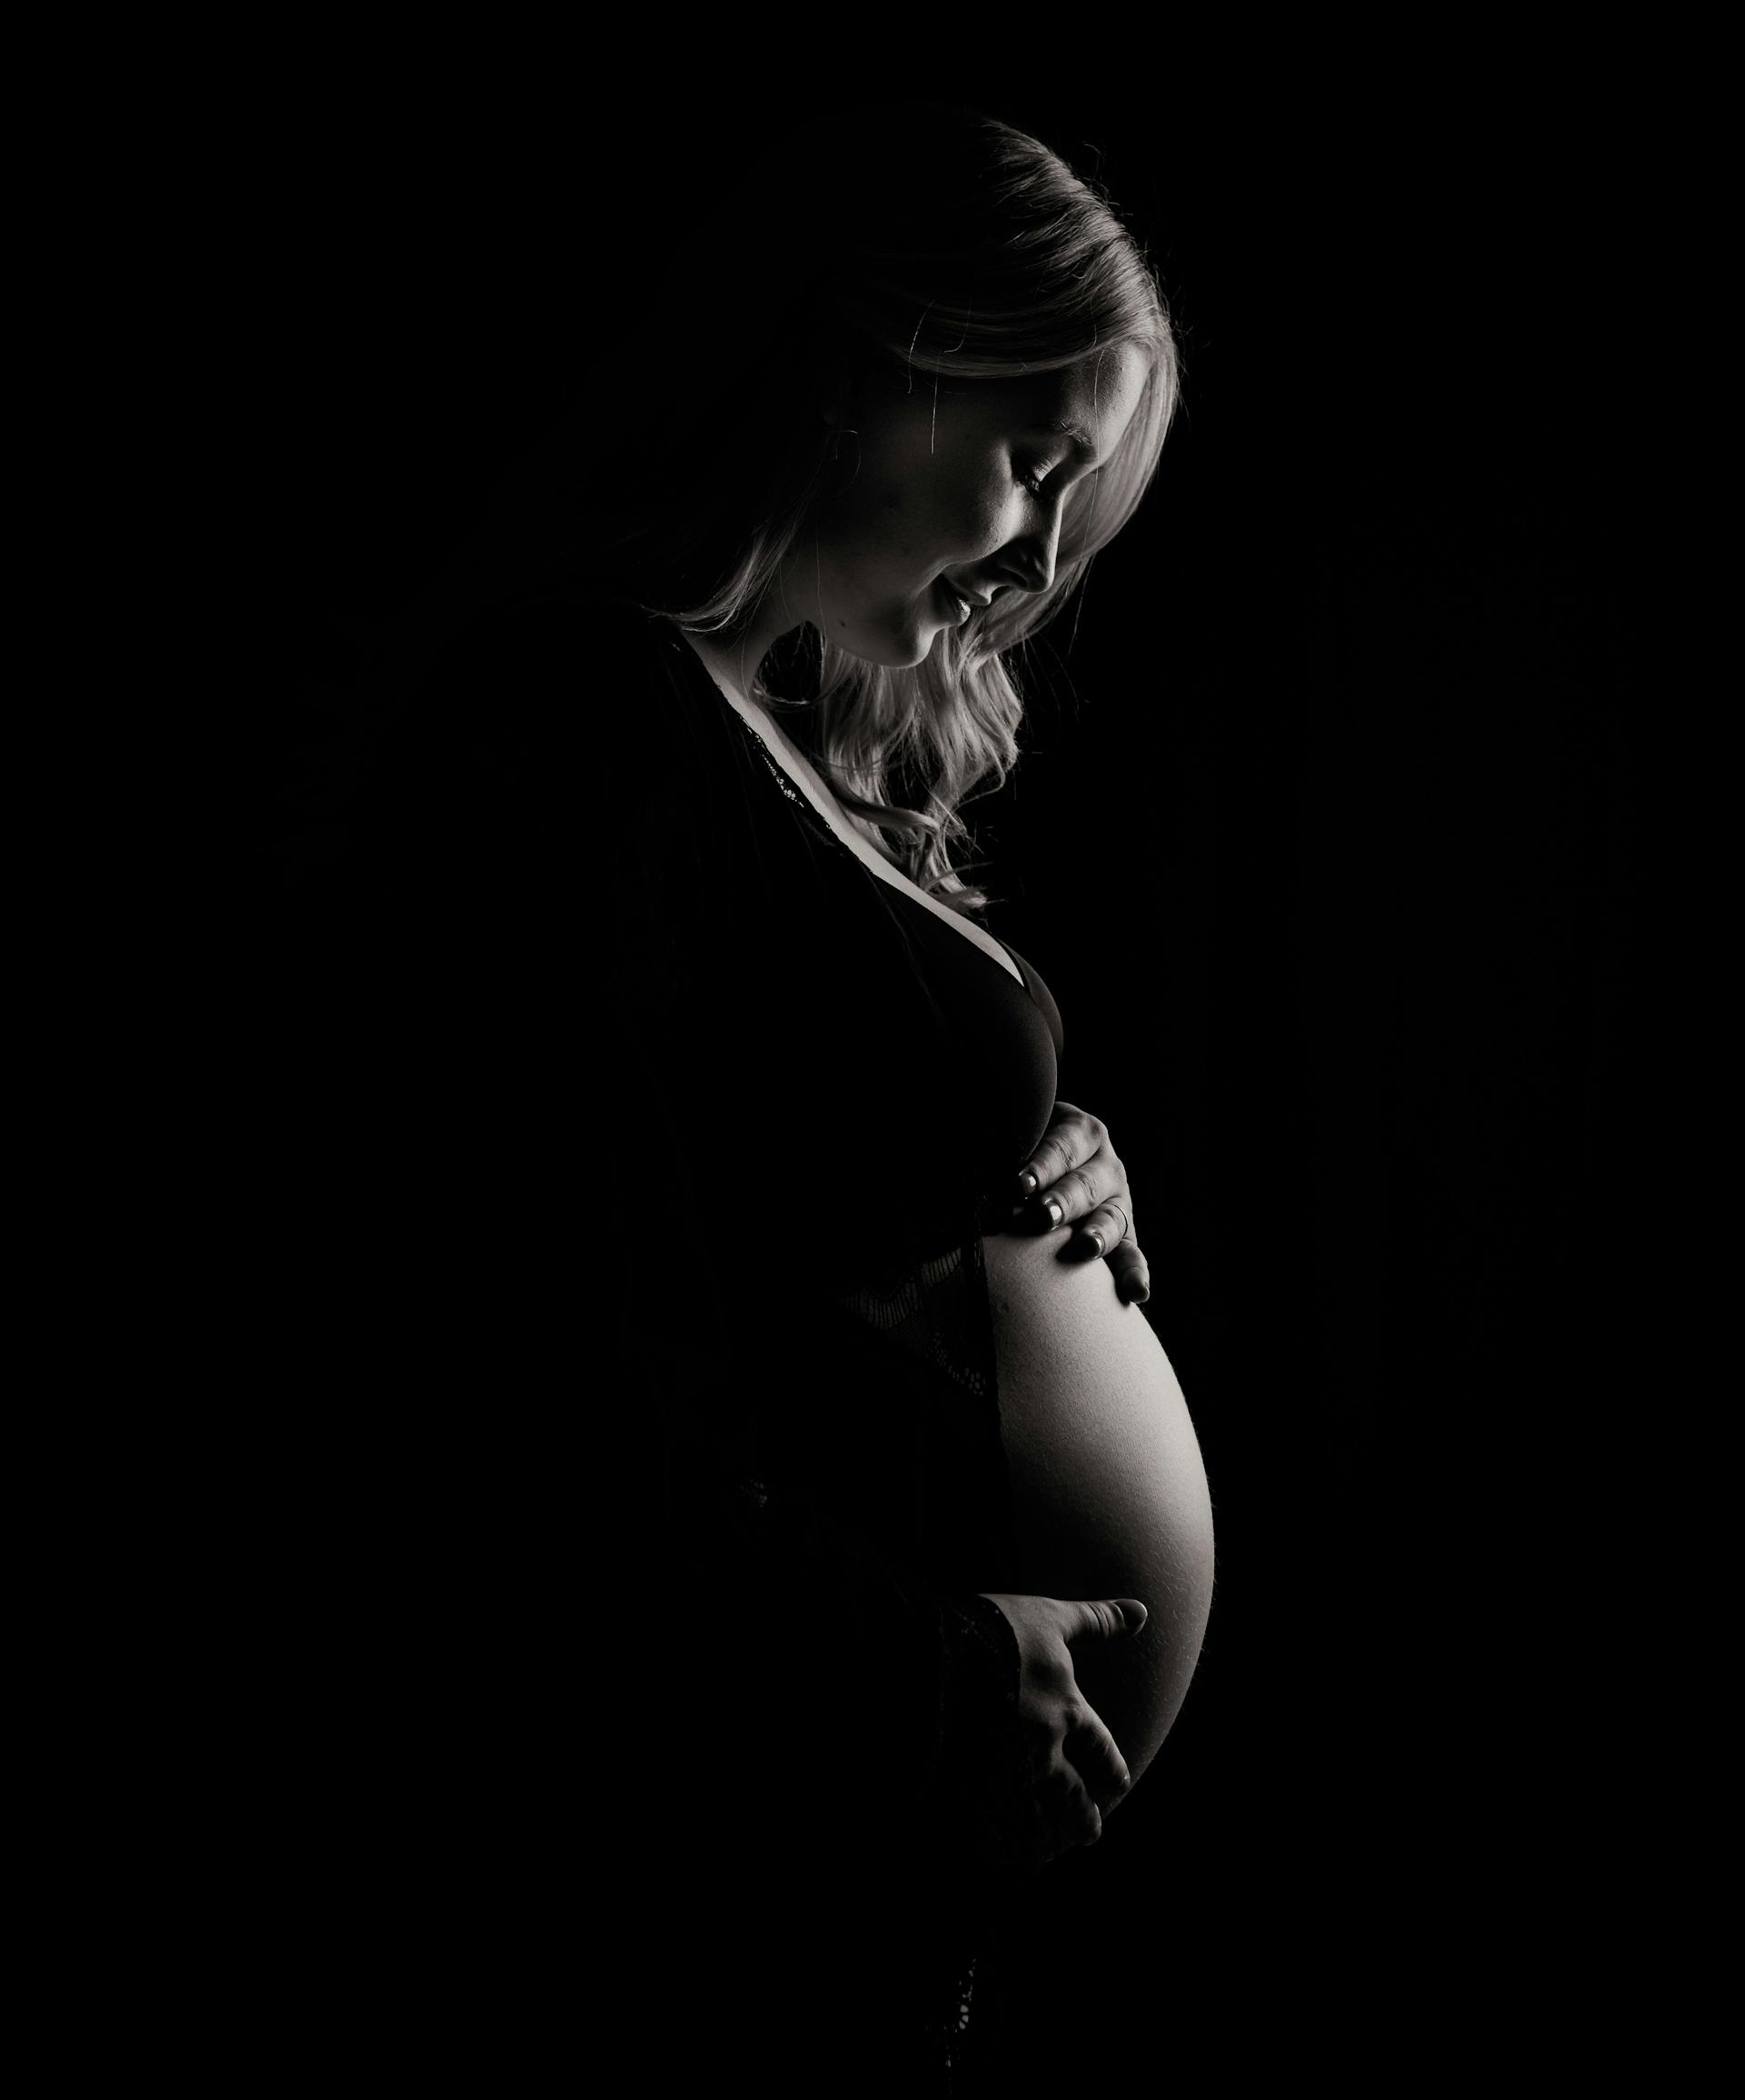 Ein Graustufenfoto einer schwangeren Frau, die ihren Babybauch hält | Quelle: Pexels